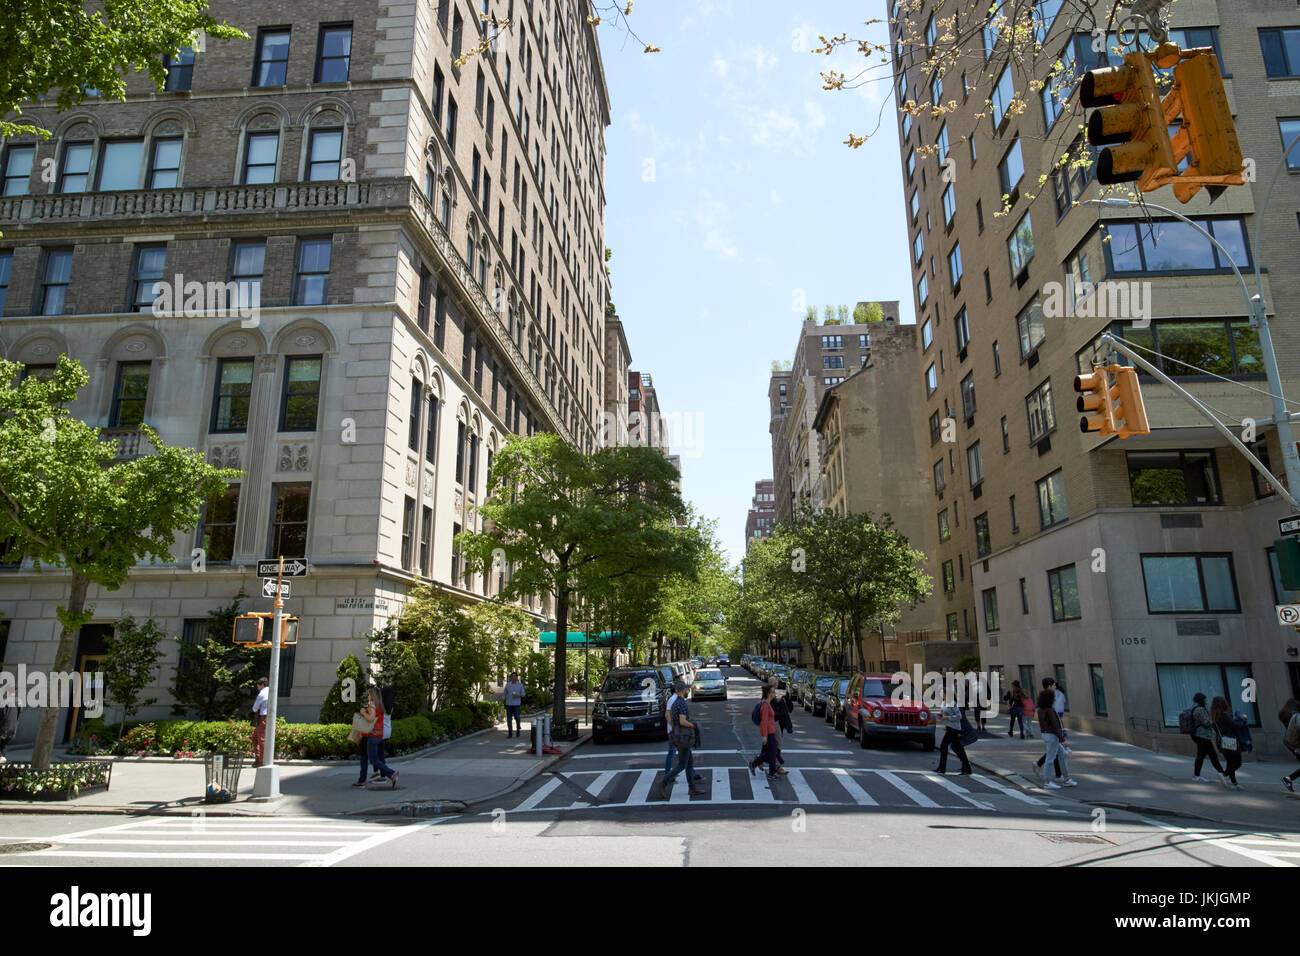 Jonction de la cinquième avenue et de la 87th street Carnegie Hill Upper East Side New York USA Banque D'Images